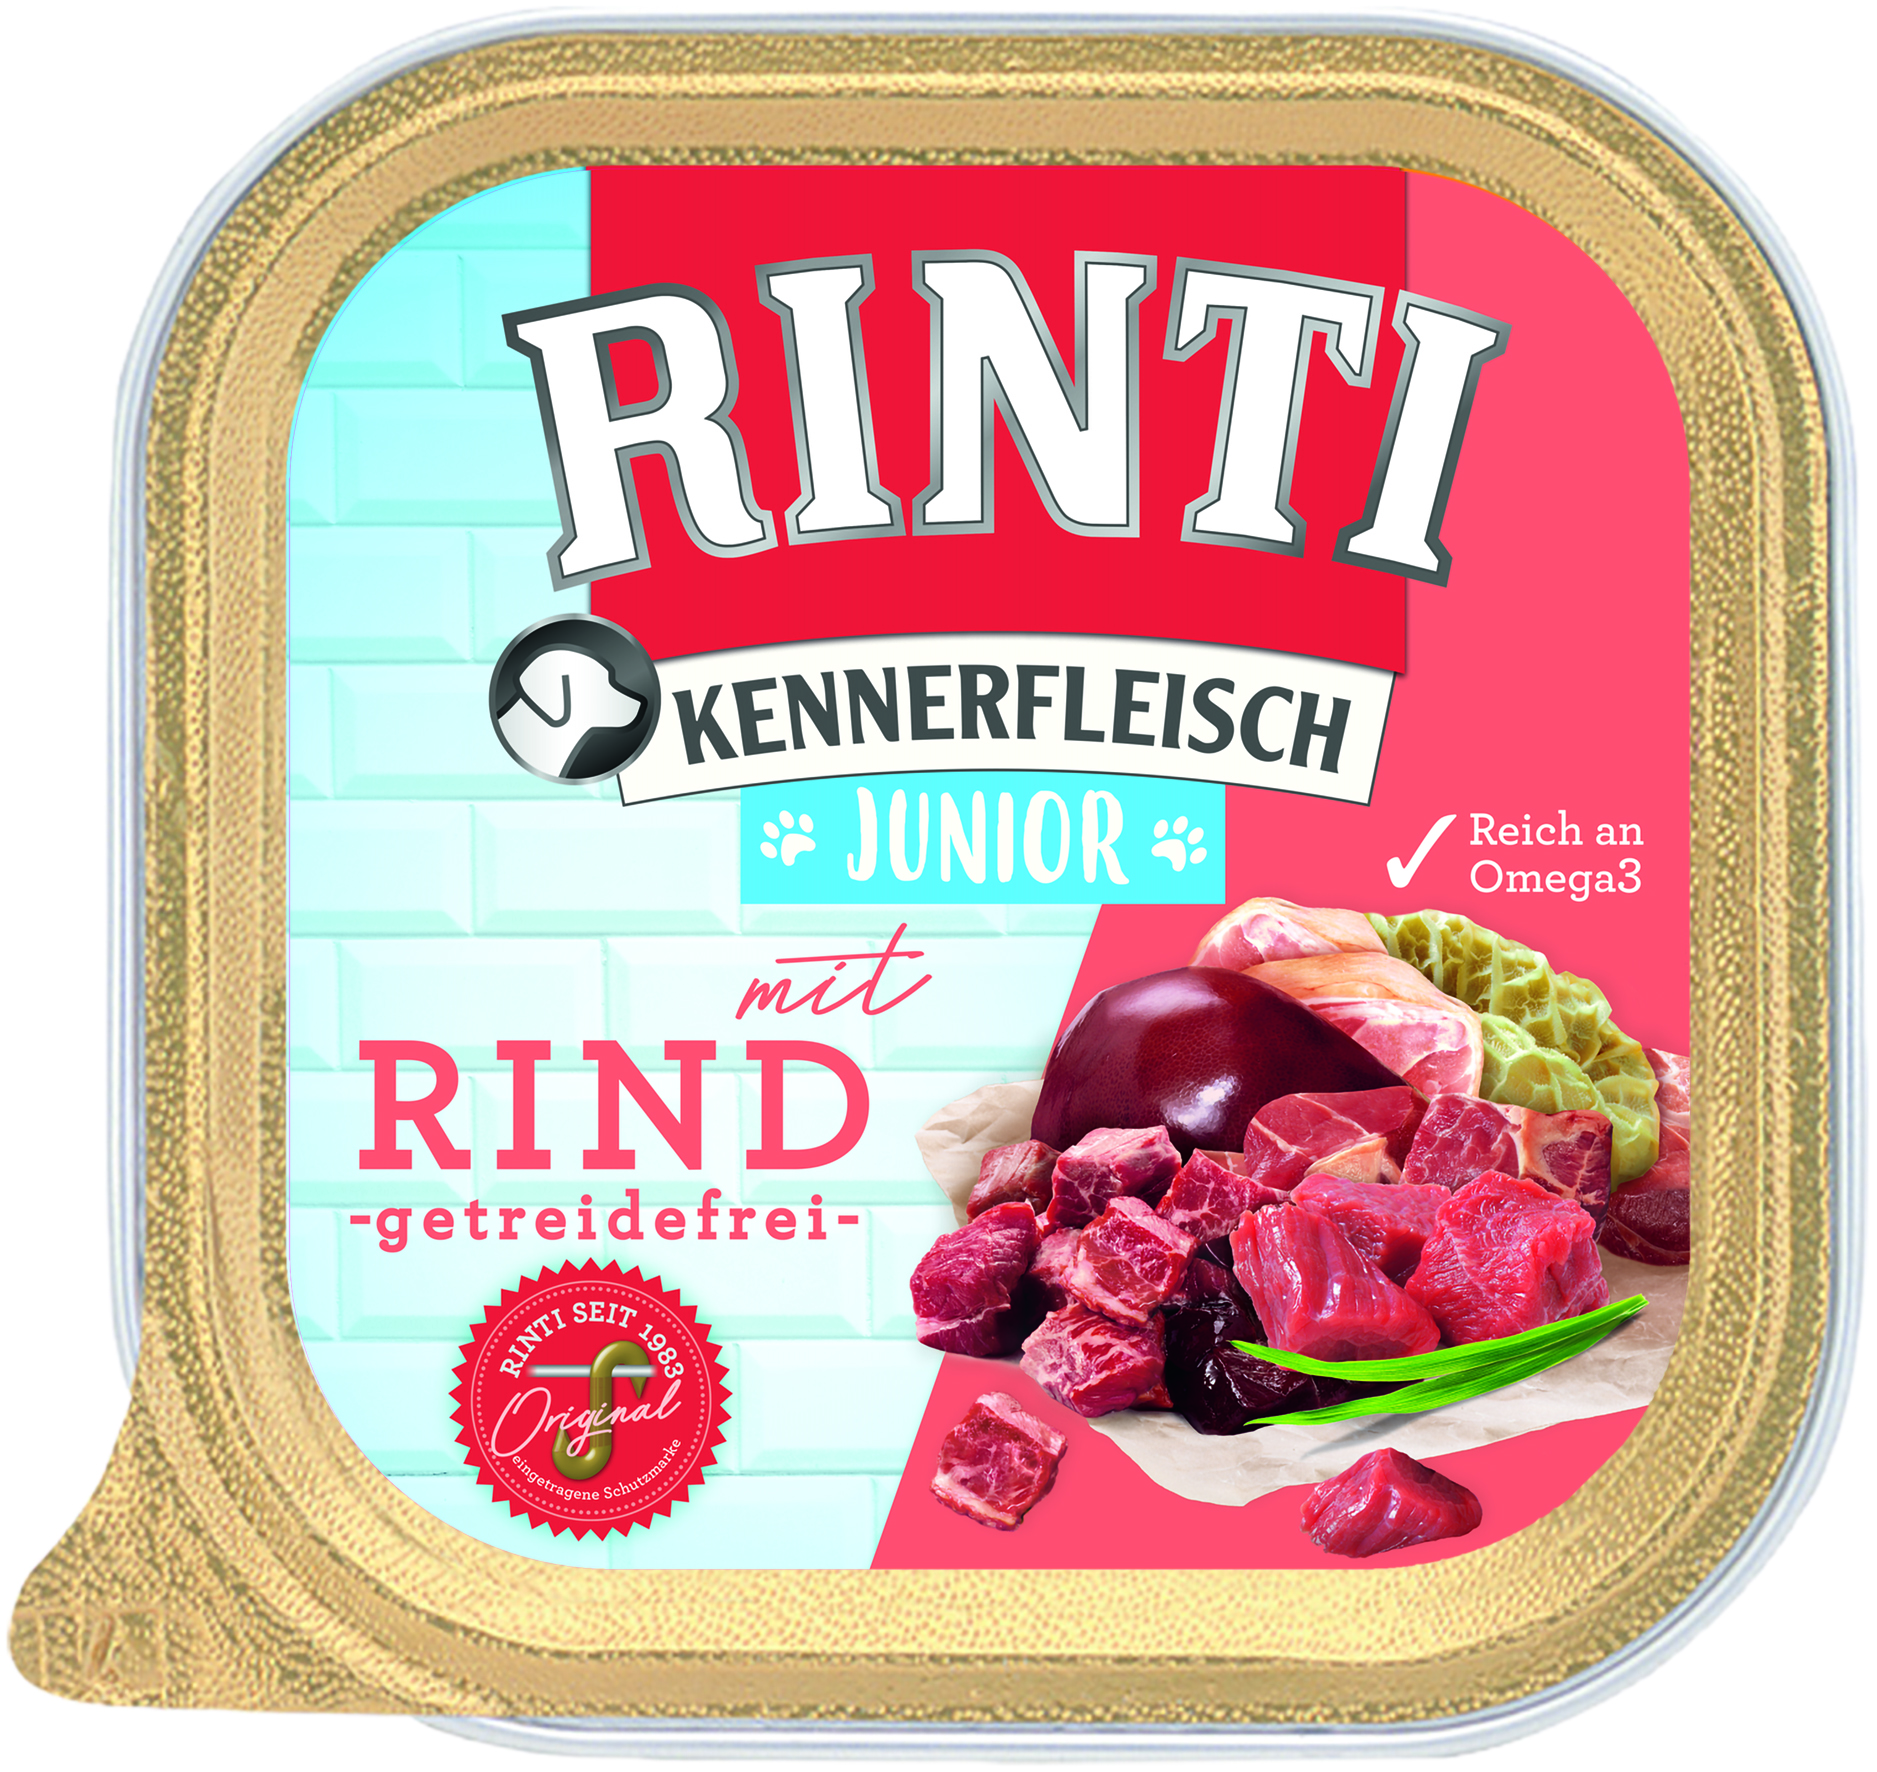 Rinti Kennerfleisch Plus Junior mit Rind 300g